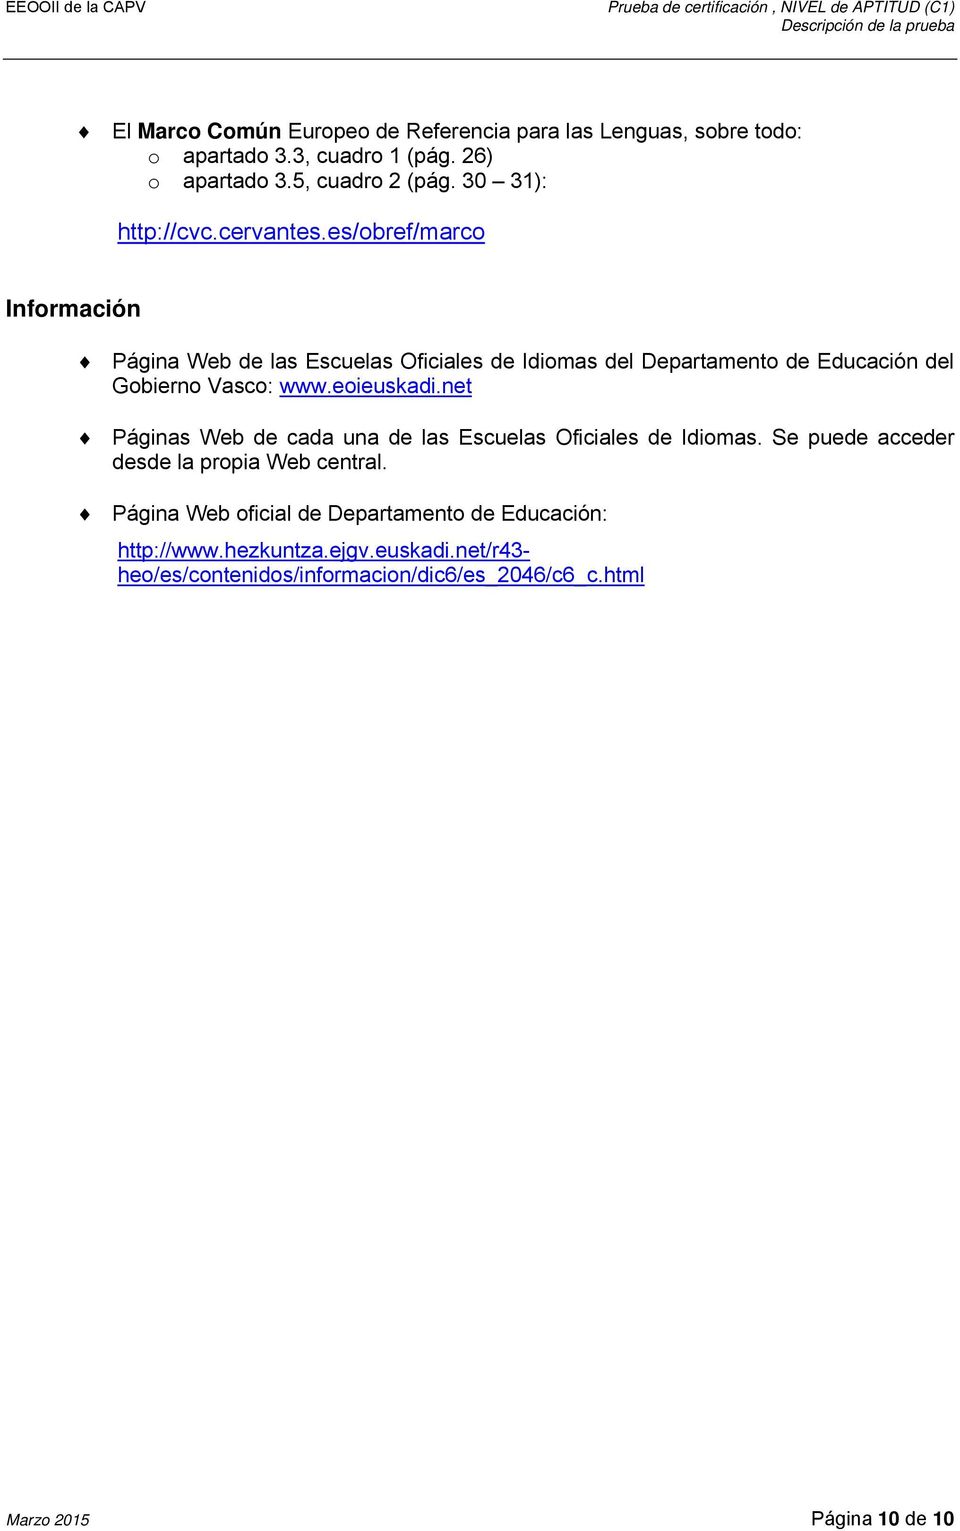 es/obref/marco Información Página Web de las Escuelas Oficiales de Idiomas del Departamento de Educación del Gobierno Vasco: www.eoieuskadi.